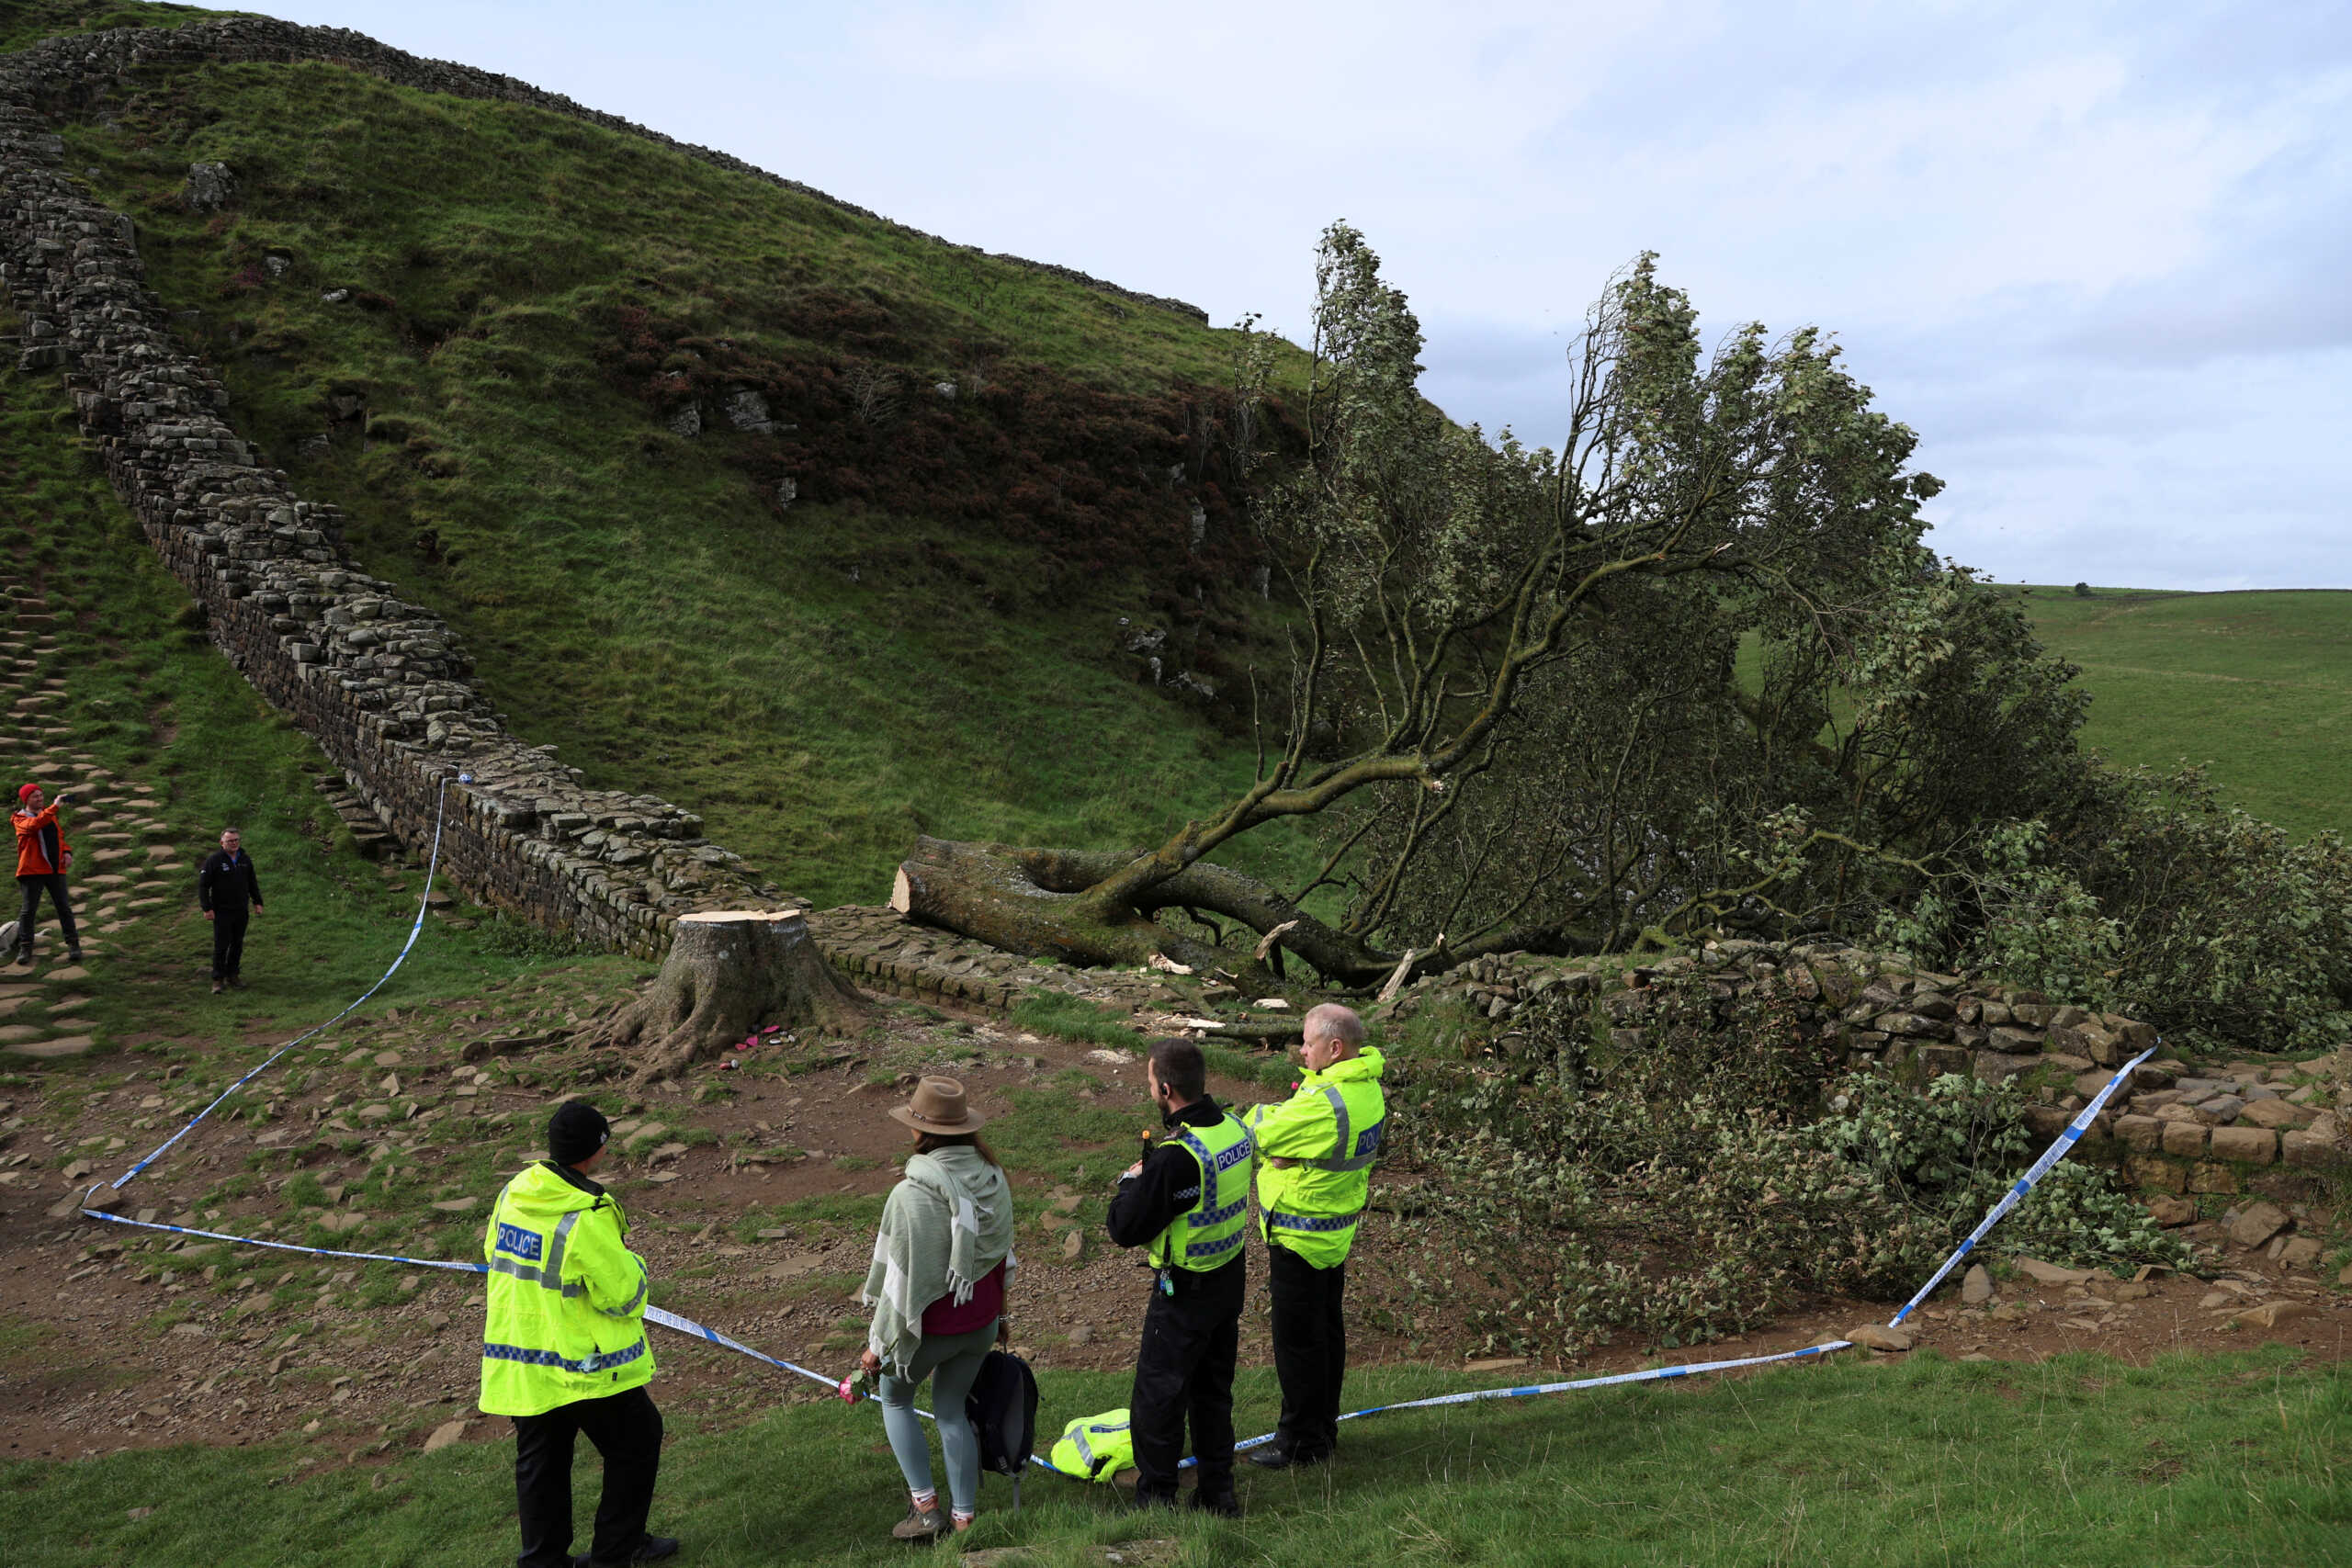 Βρετανία: Βάνδαλοι έκοψαν το εμβληματικό δέντρο του Ρομπέν των Δασών στο εθνικό πάρκο του Νορθάμπερλαντ